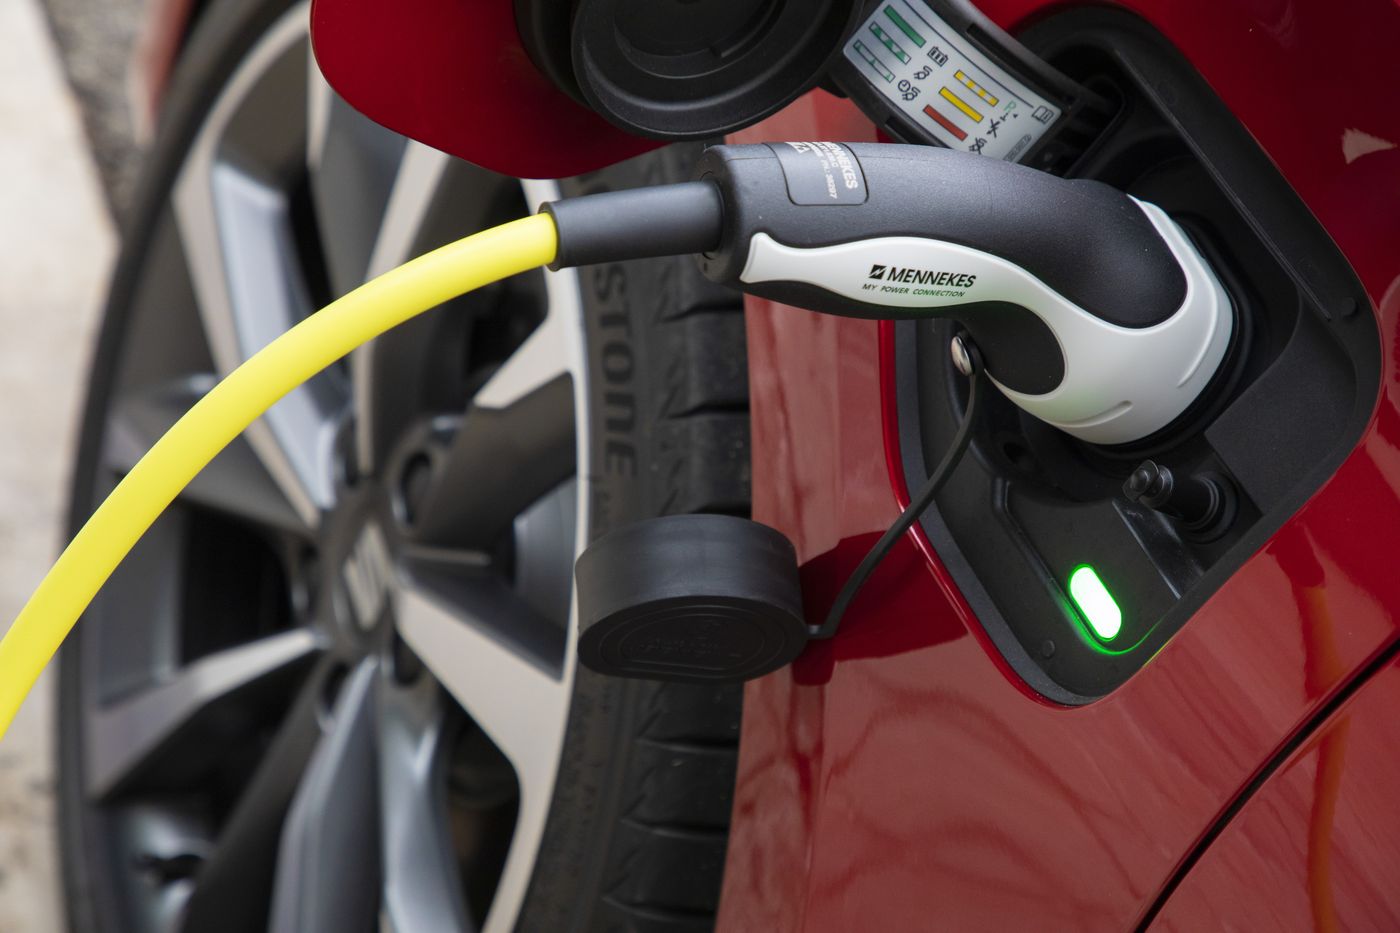 5 preguntas clave sobre baterías según la marca Seat; el corazón de los vehículos eléctricos e híbridos testadas como mínimo 160.000 kilómetros